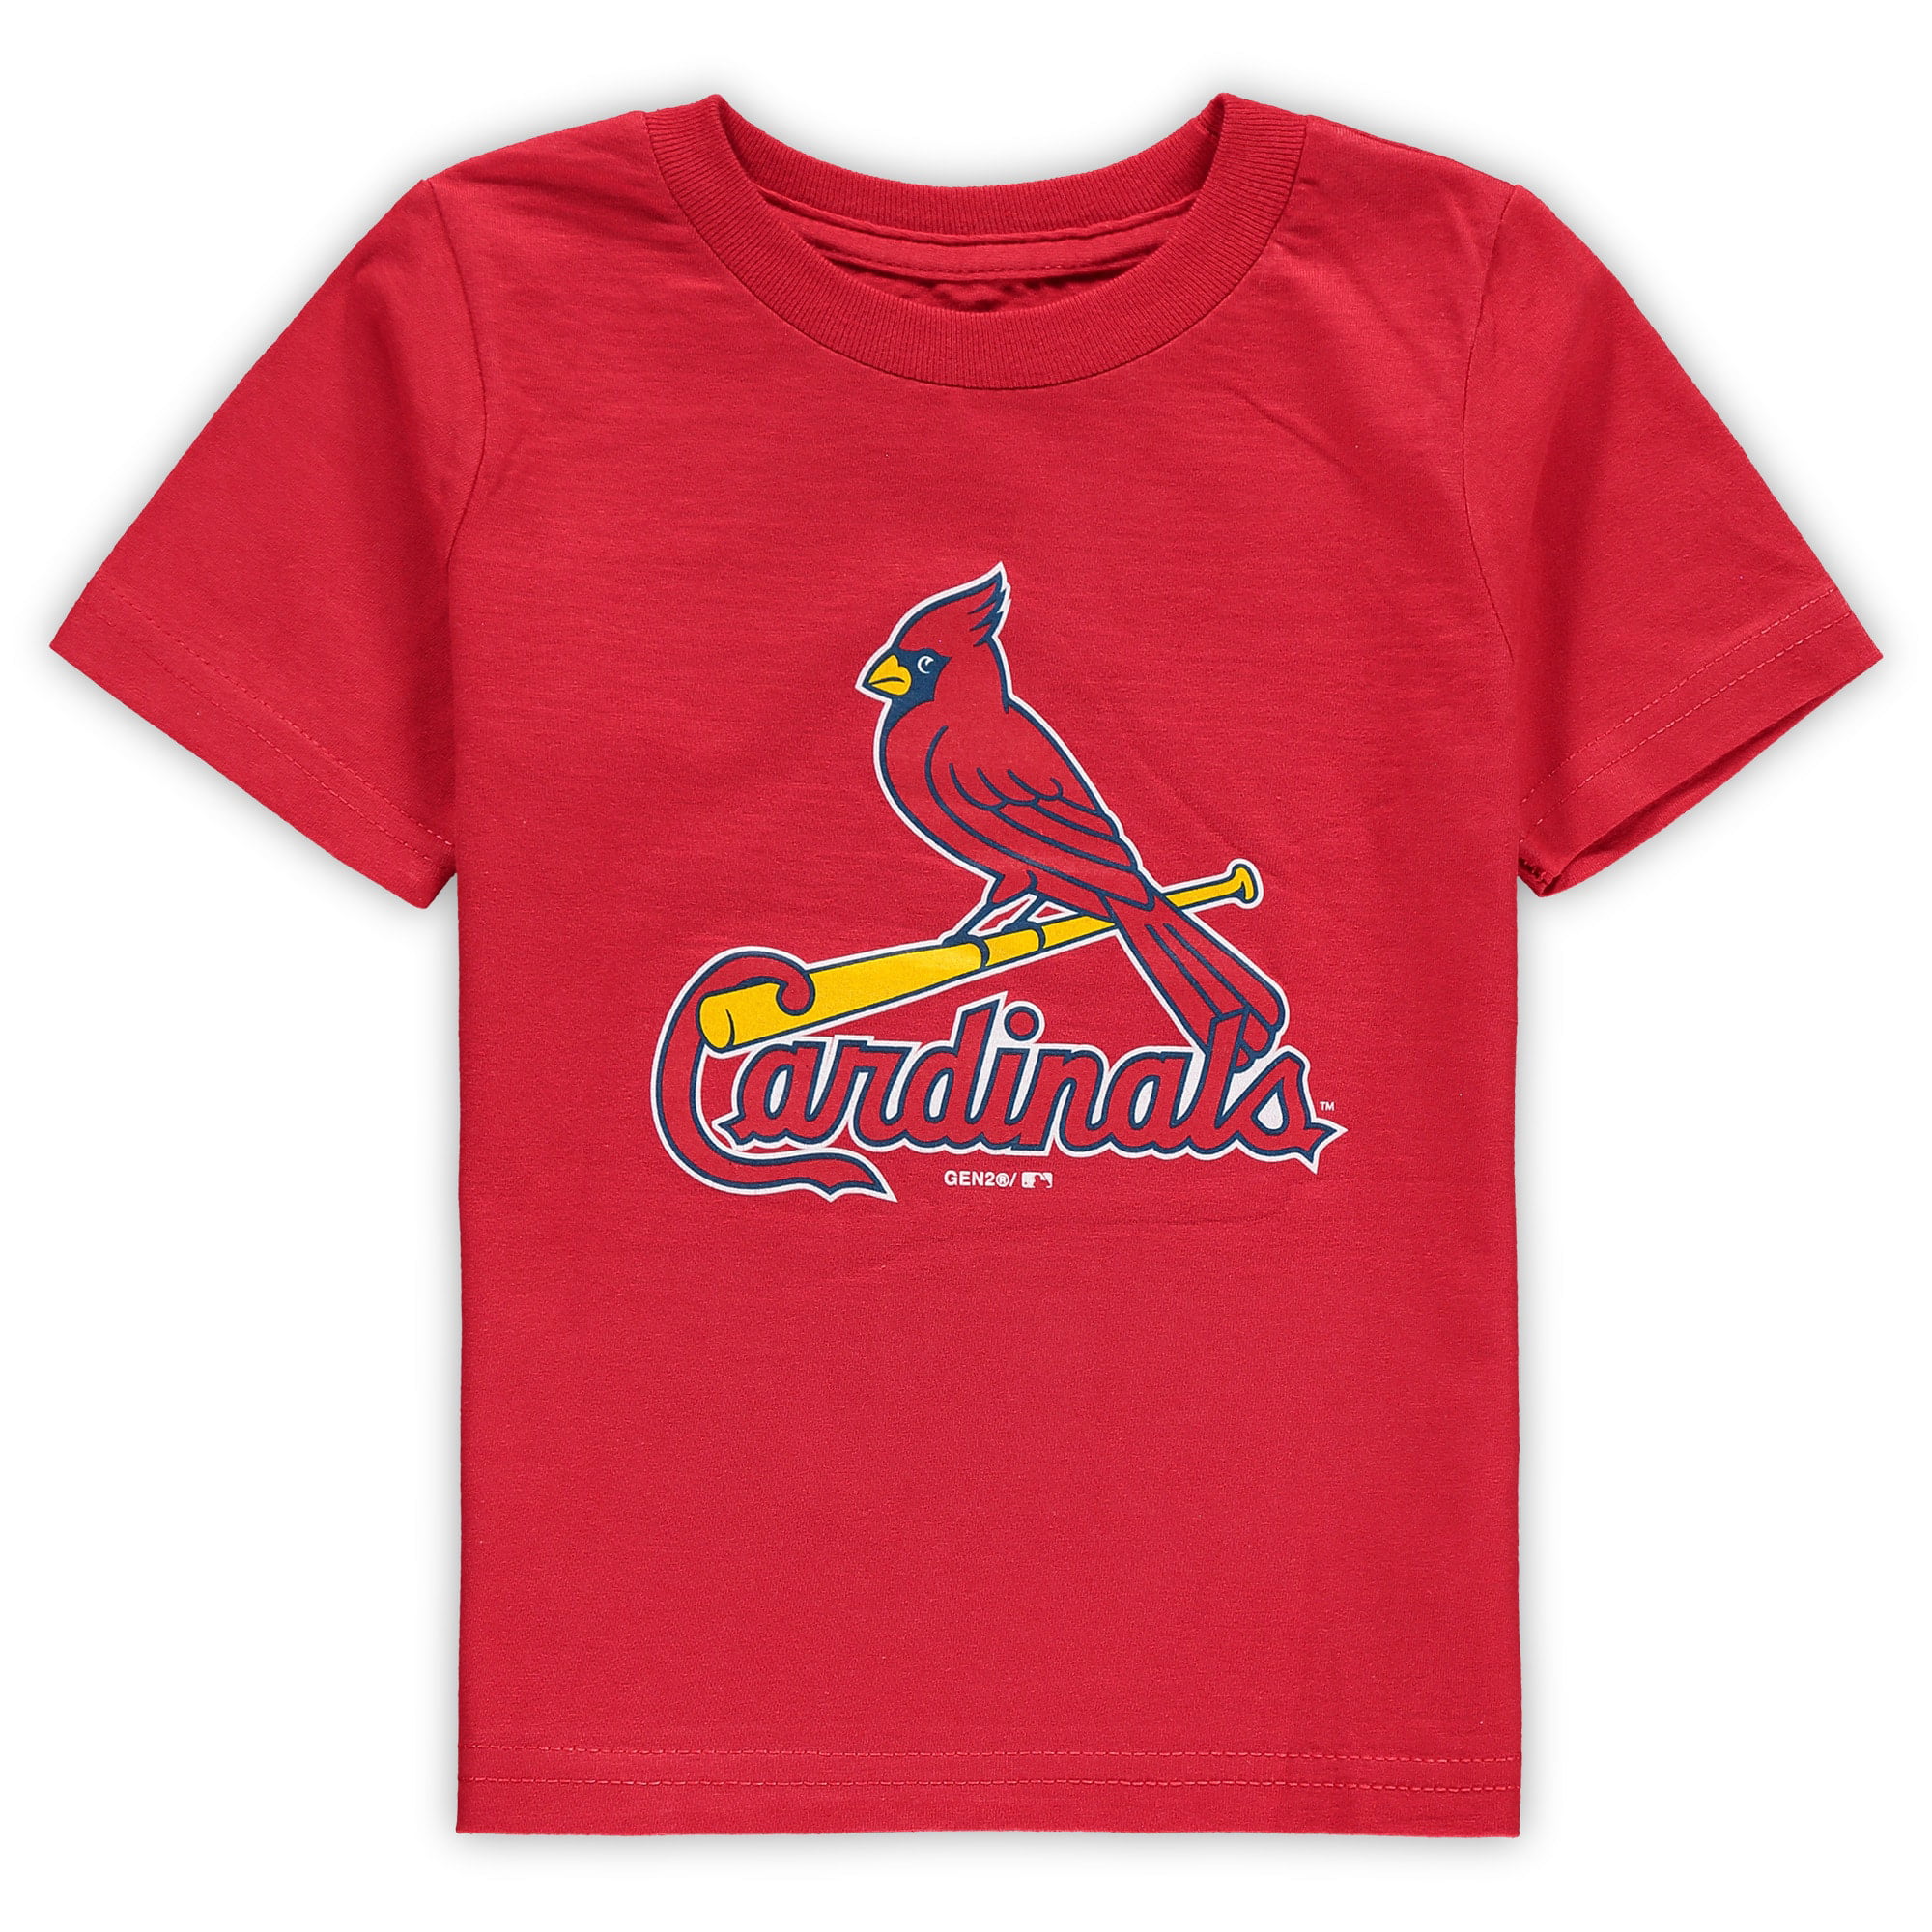 St. Louis Cardinals Toddler Primary Team Logo T-Shirt - Red - www.semashow.com - www.semashow.com